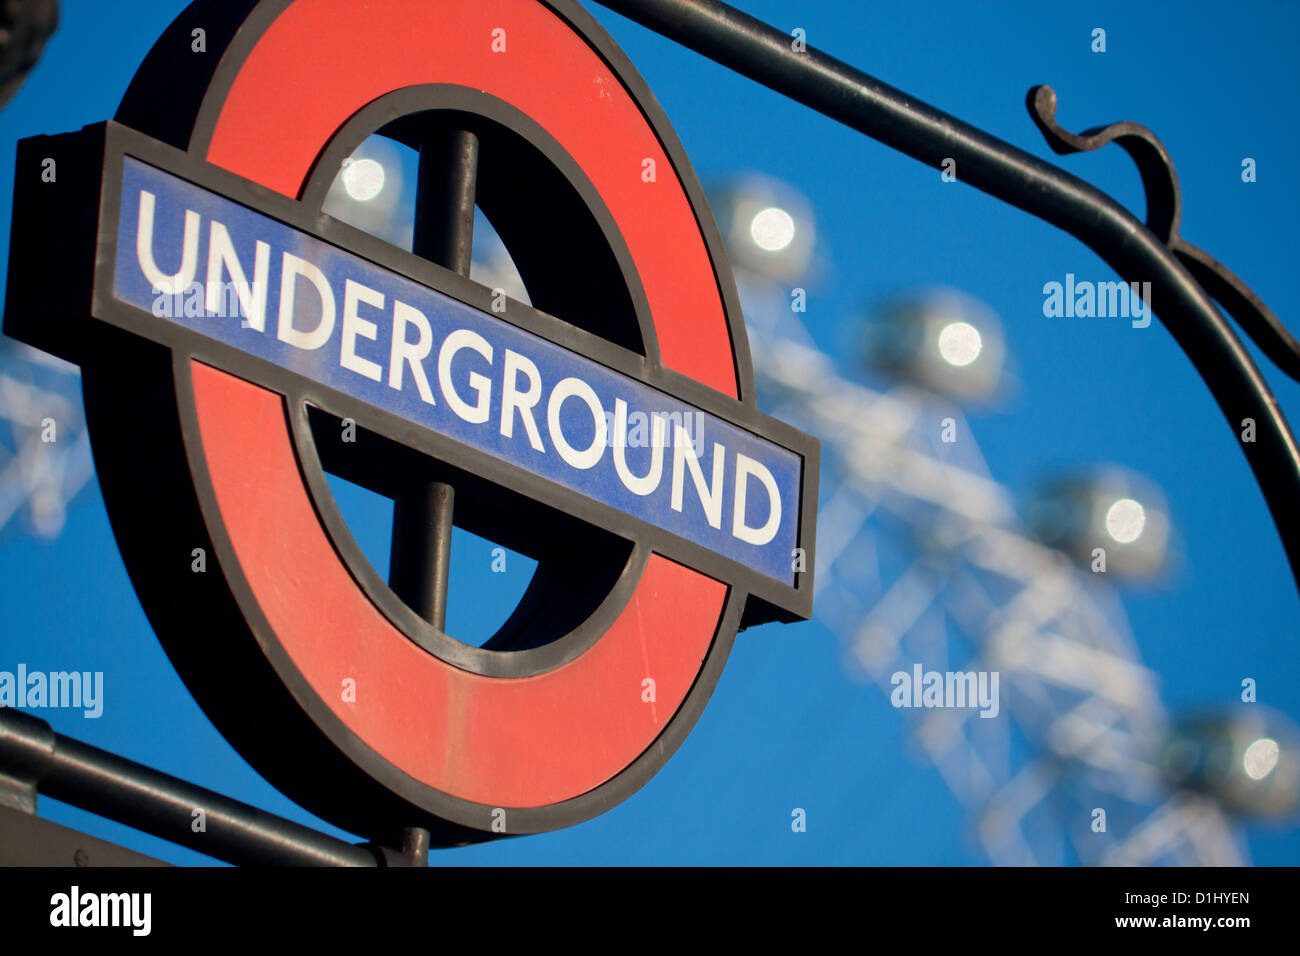 London Underground roundel at station entrance with London Eye ferris wheel framed Blue sky background London England UK Stock Photo